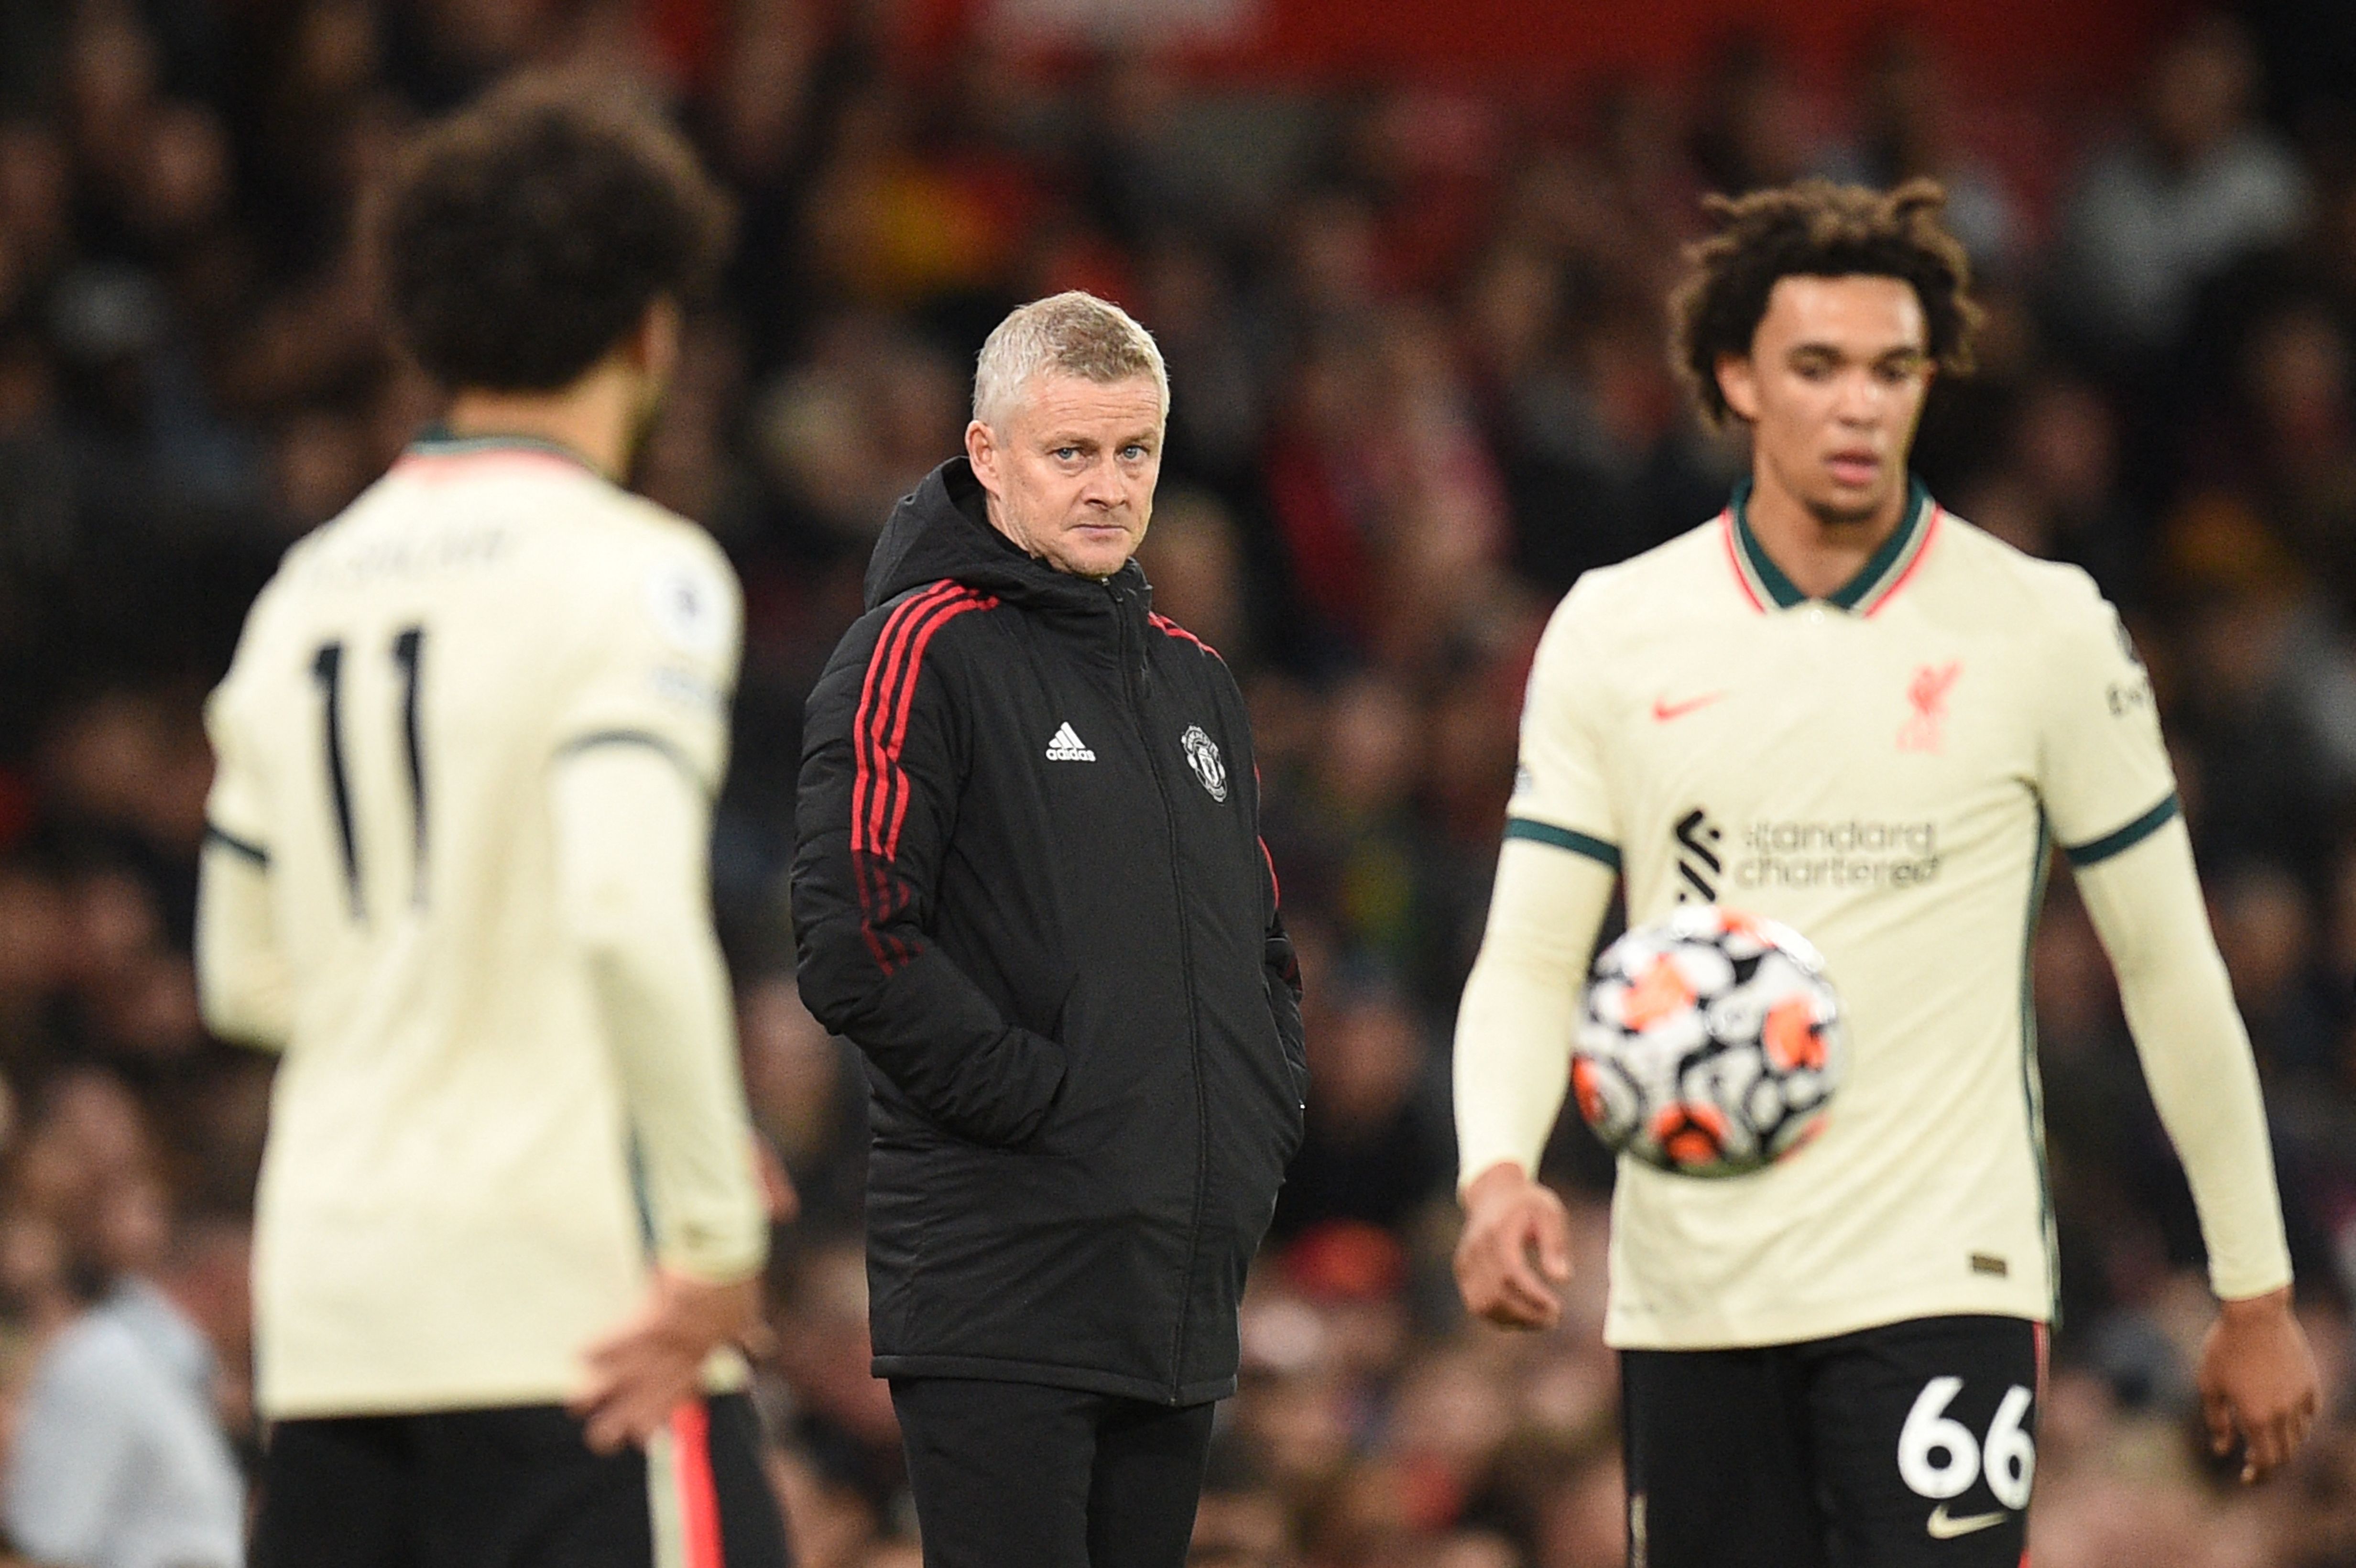 El entrenador noruego del Manchester United Ole Gunnar Solskjaer contempla desde lejos a sus rivales del Liverpool, Mohammed Salah (izquierda) y Trent Alexander Arnold. (Foto Prensa Libre: AFP)